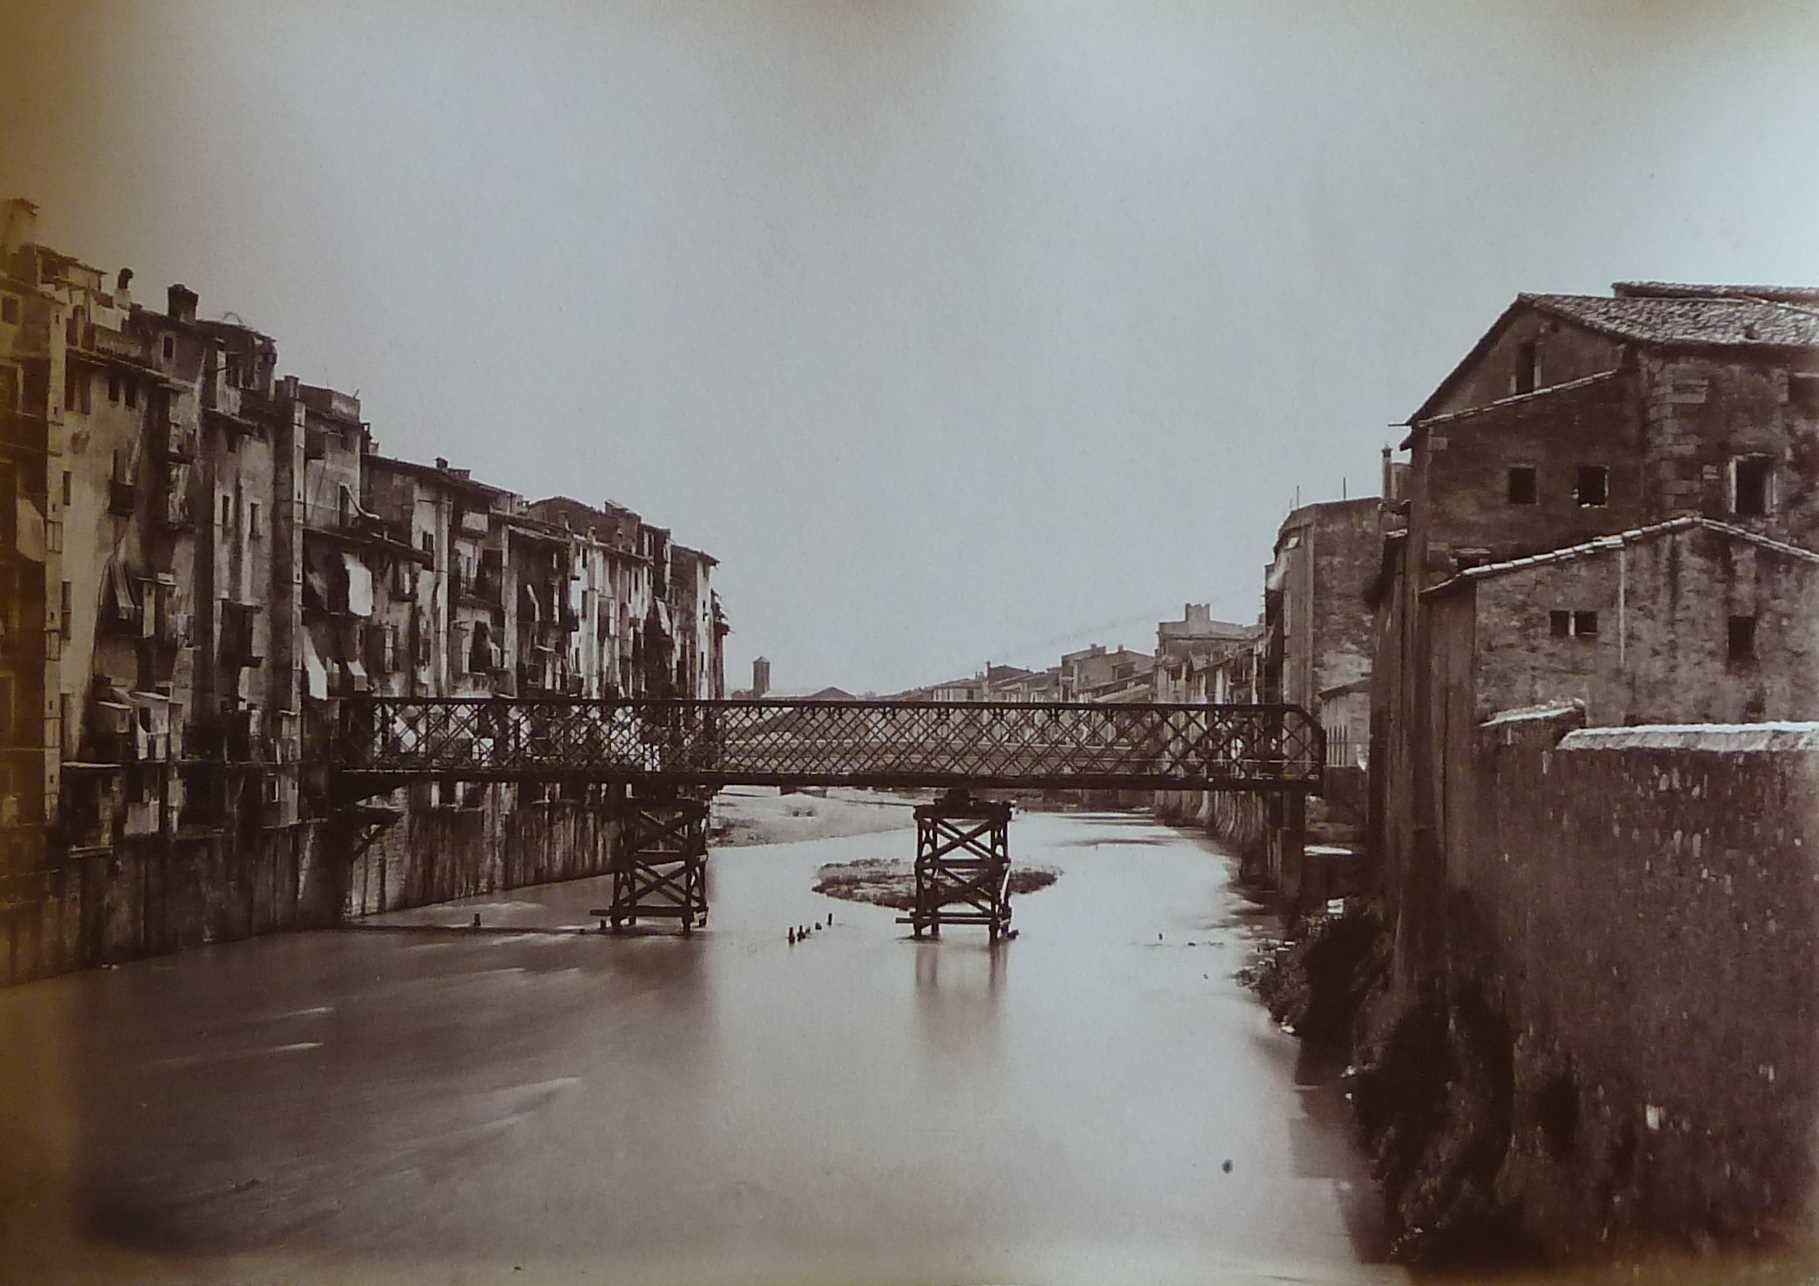 Puente de hierro inaugurado en 1877